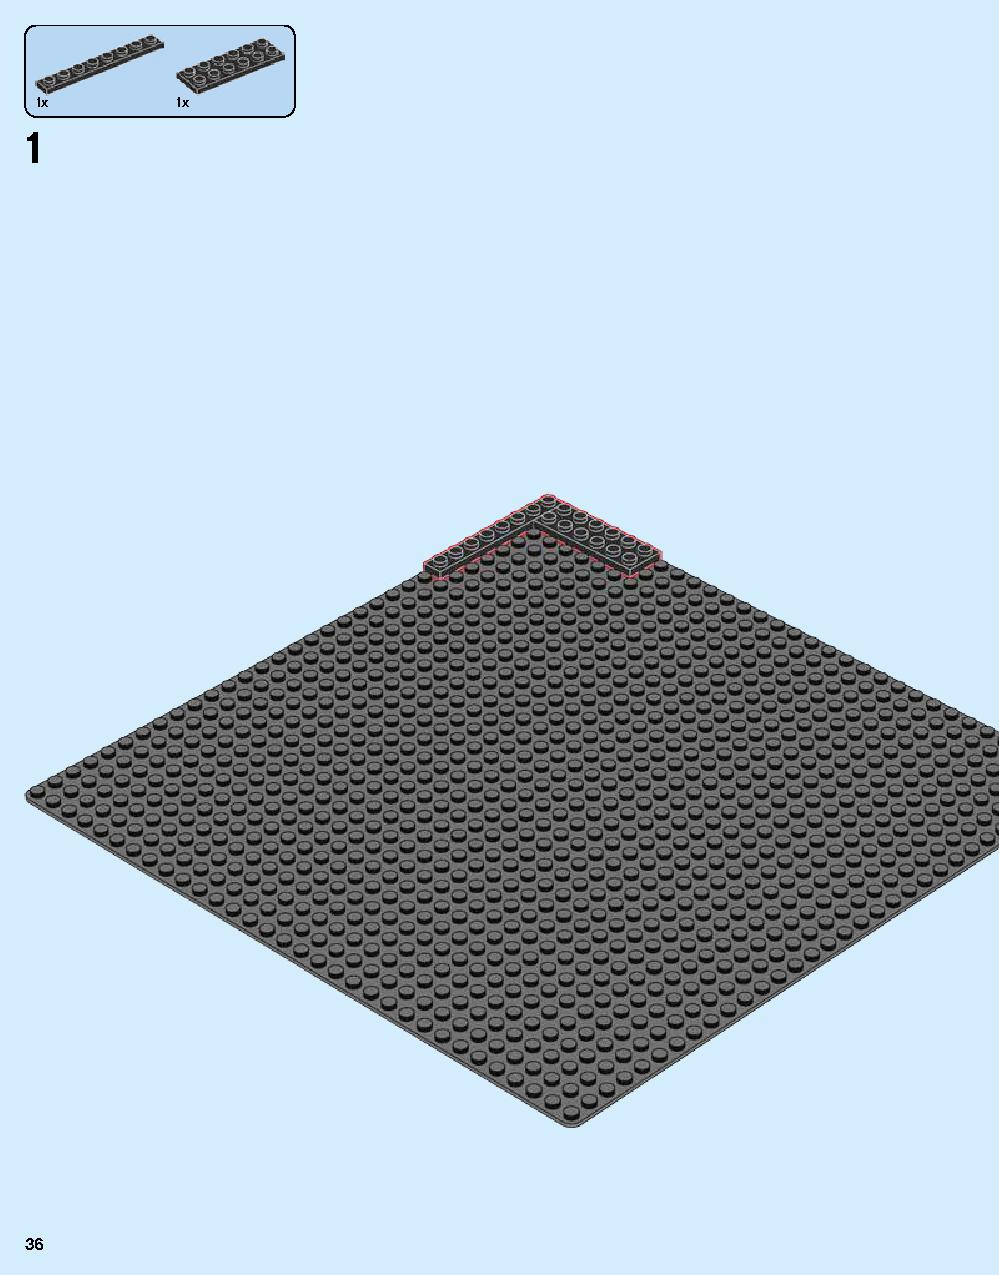 ニンジャゴー シティ 70620 レゴの商品情報 レゴの説明書・組立方法 36 page